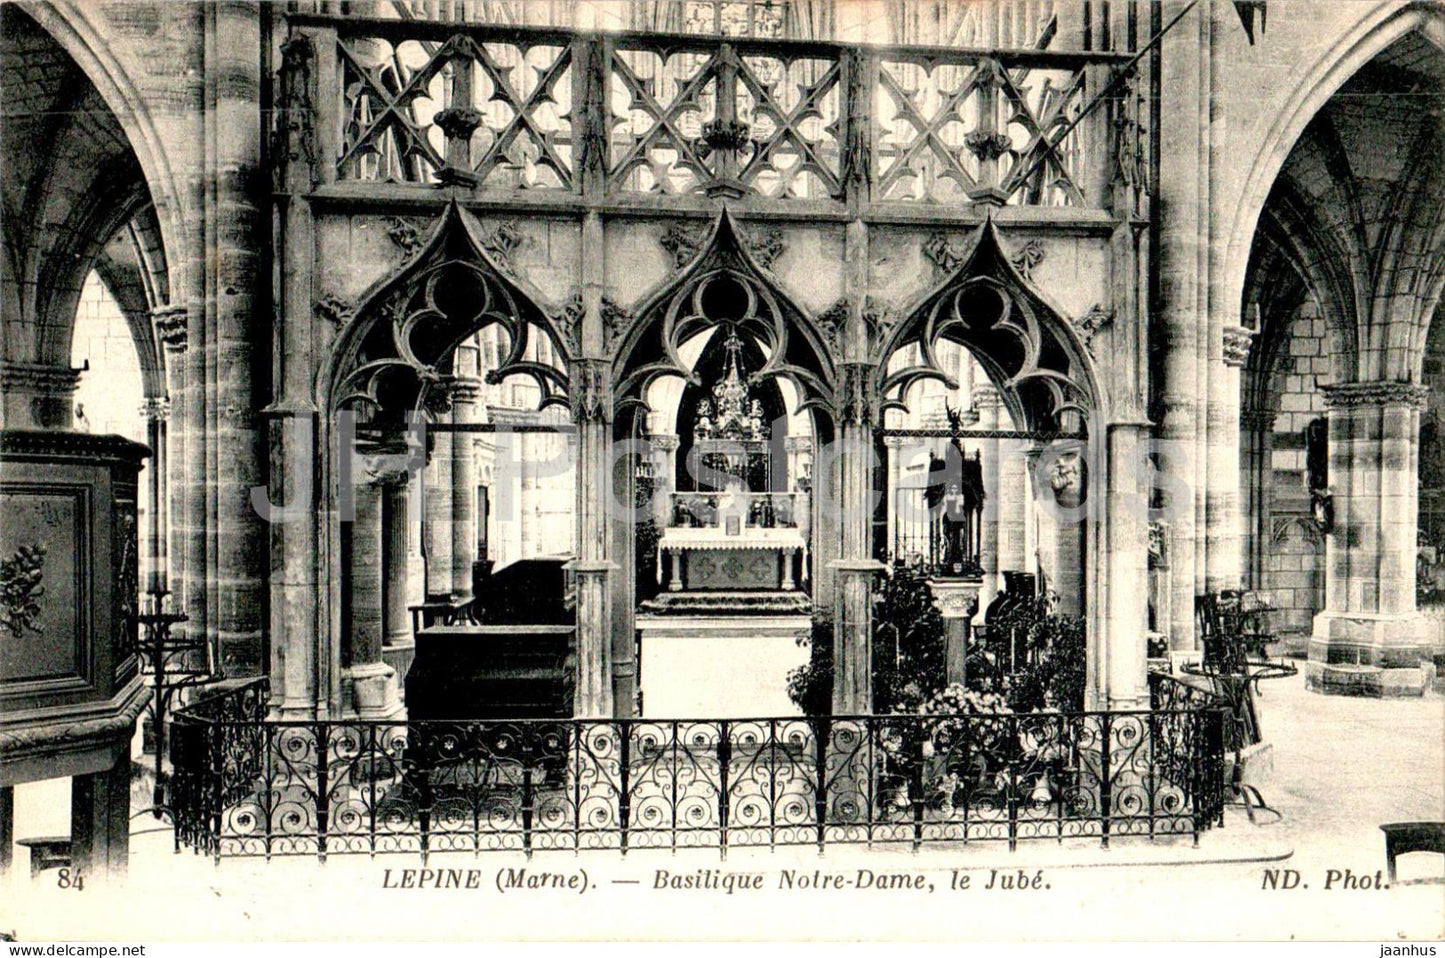 L'Epine - Basilique Notre Dame - Le Jube - cathedral - 84 - old postcard - France - unused - JH Postcards